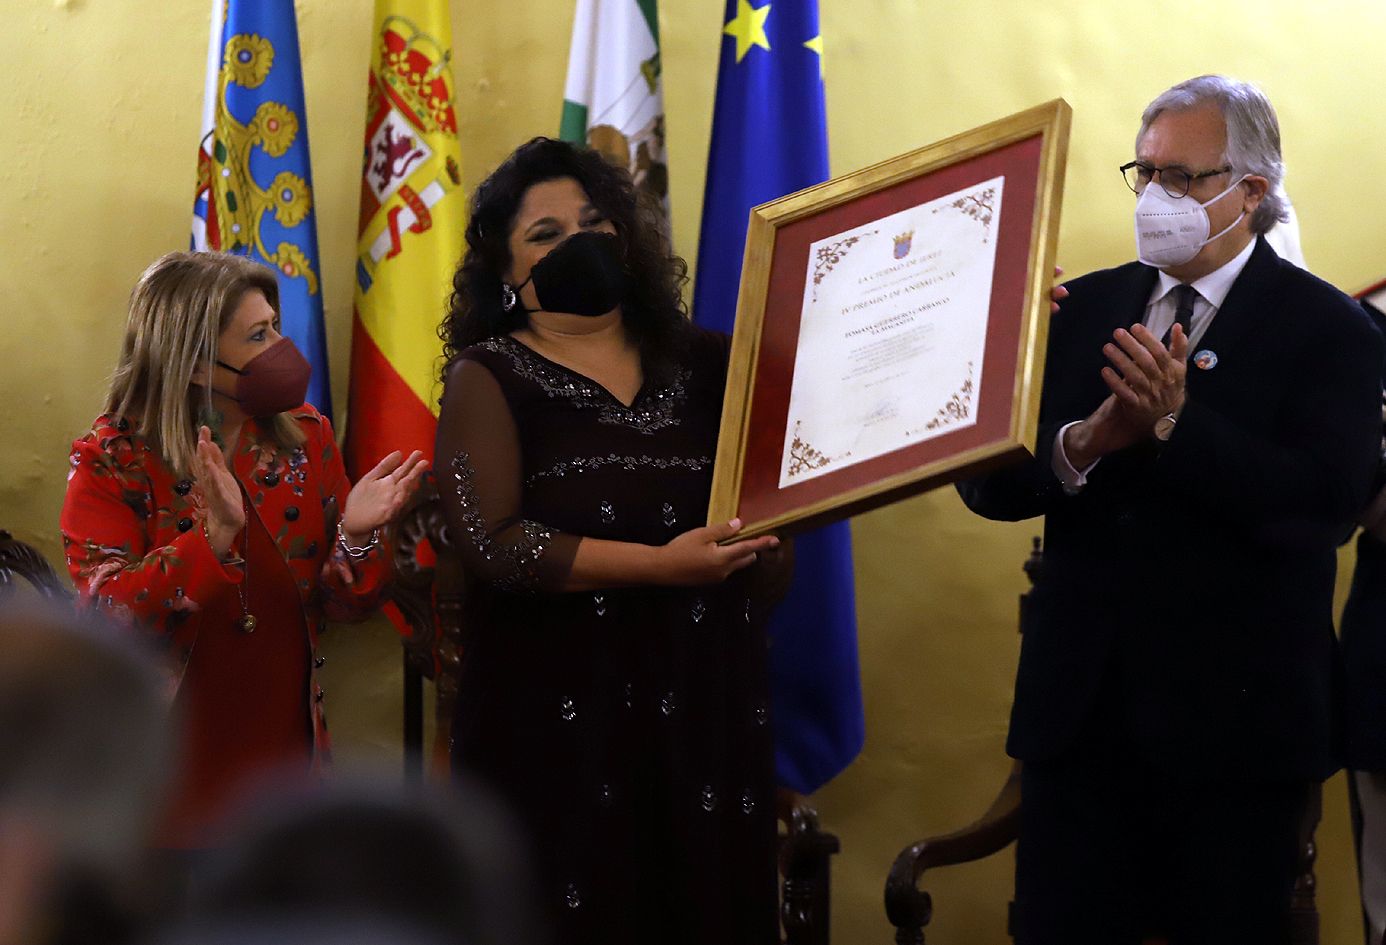 La Macanita, "símbolo del arte de Jerez", recibe el Premio de Andalucía. La Macanita recibe este reconocimiento, junto a Mamen Sánchez y Francisco Camas.